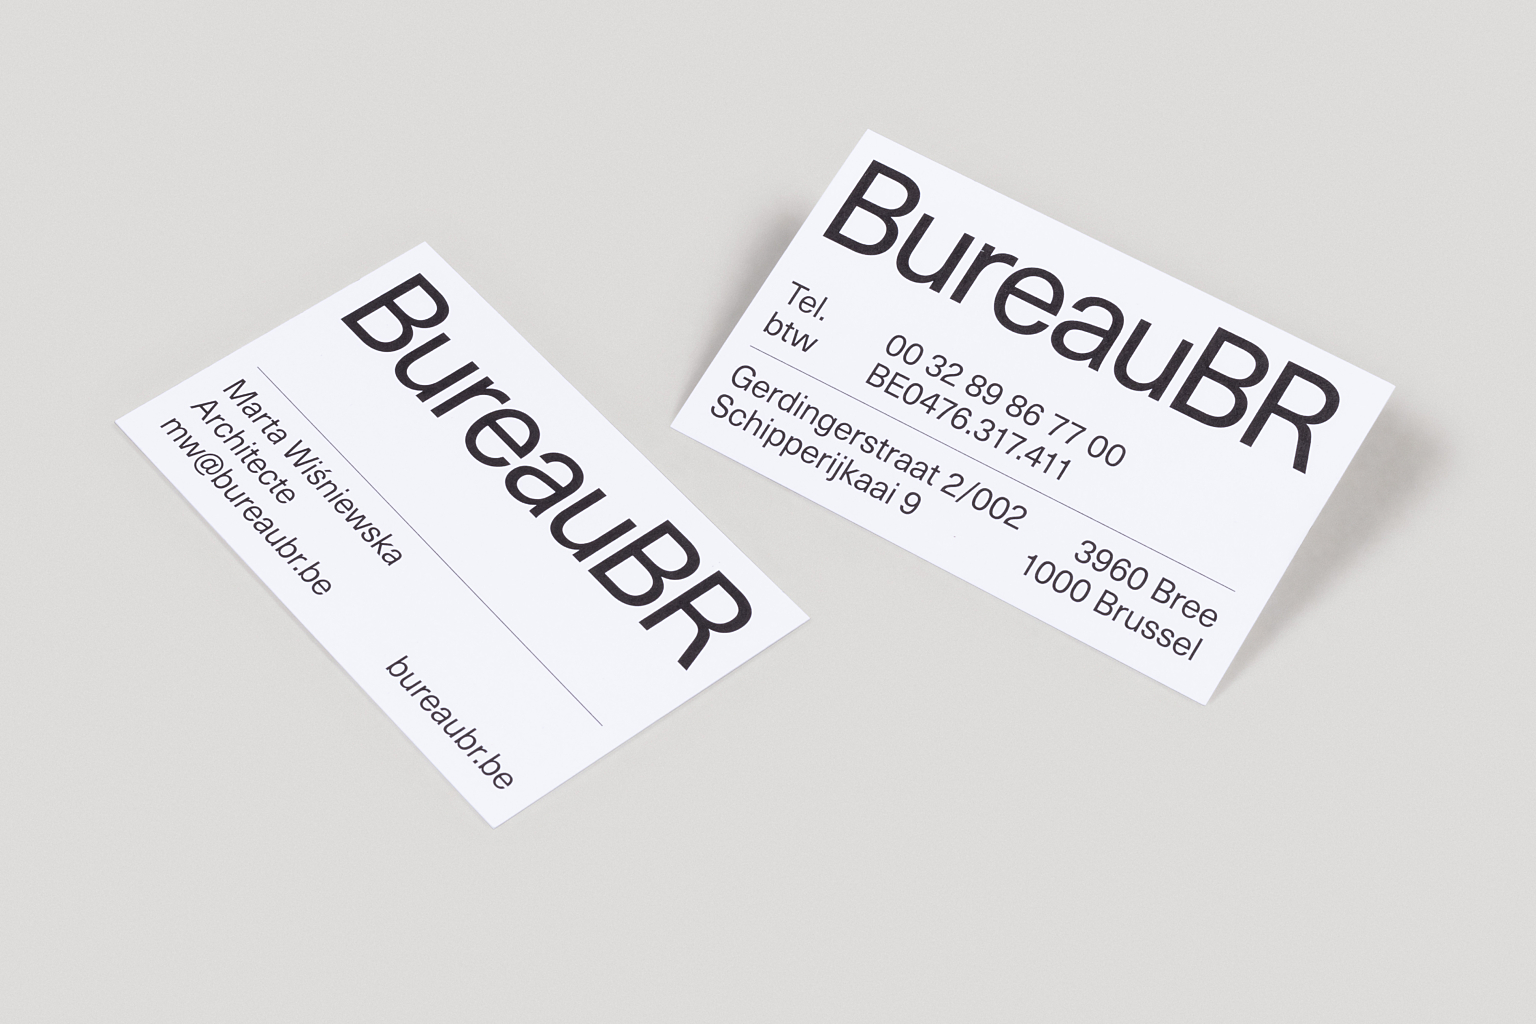 Bureau BR business cards